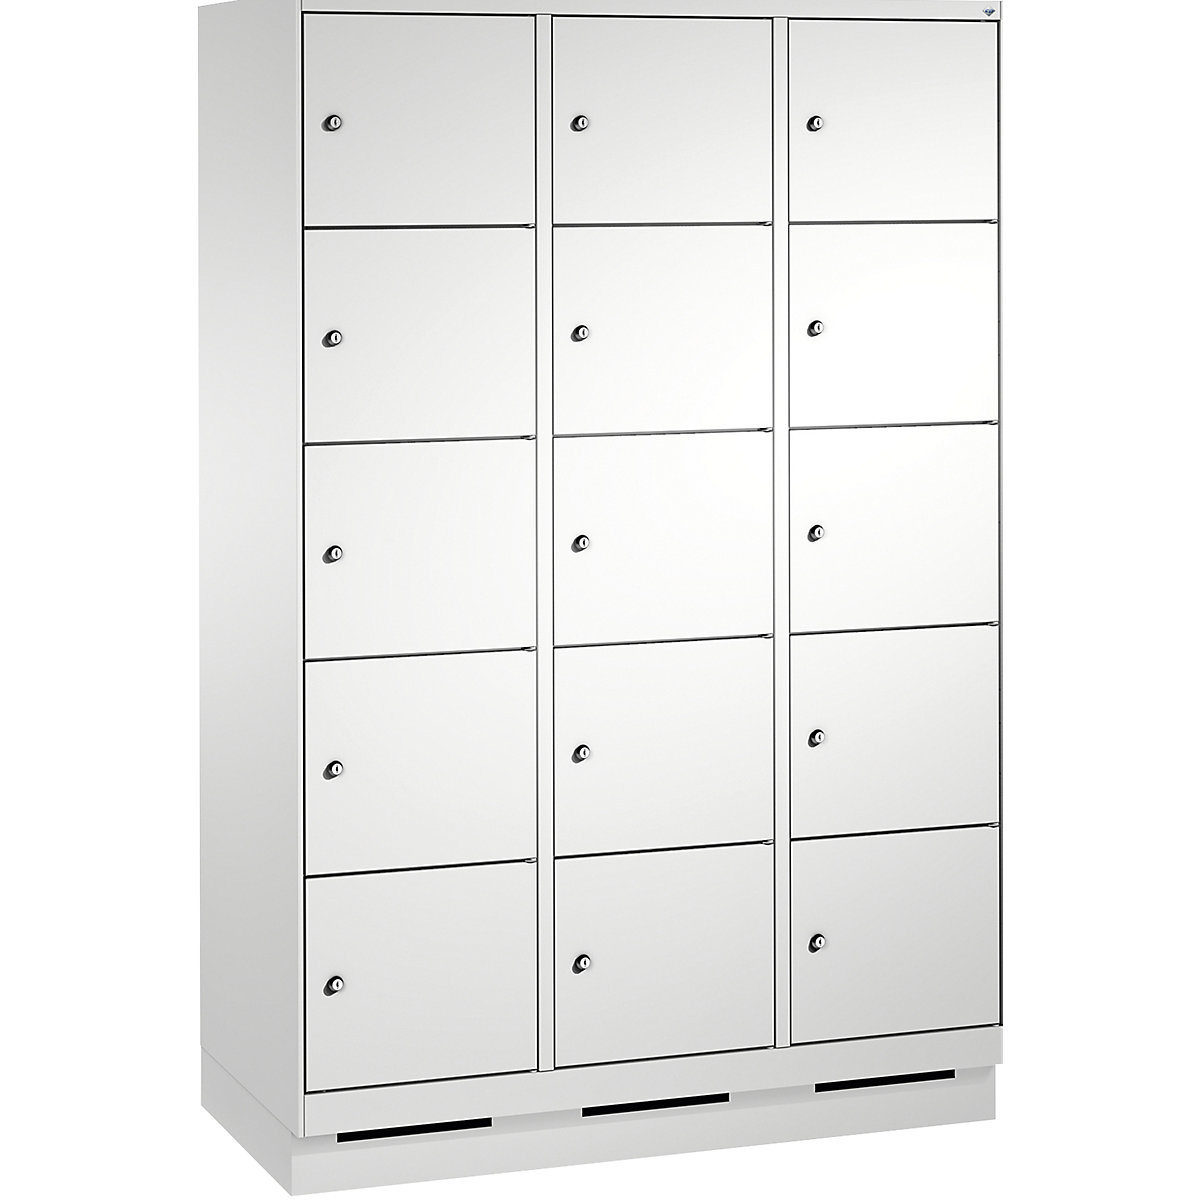 Armoire à casiers sur socle EVOLO – C+P, 3 compartiments, 5 casiers chacun, largeur compartiments 400 mm, gris clair / gris clair-6